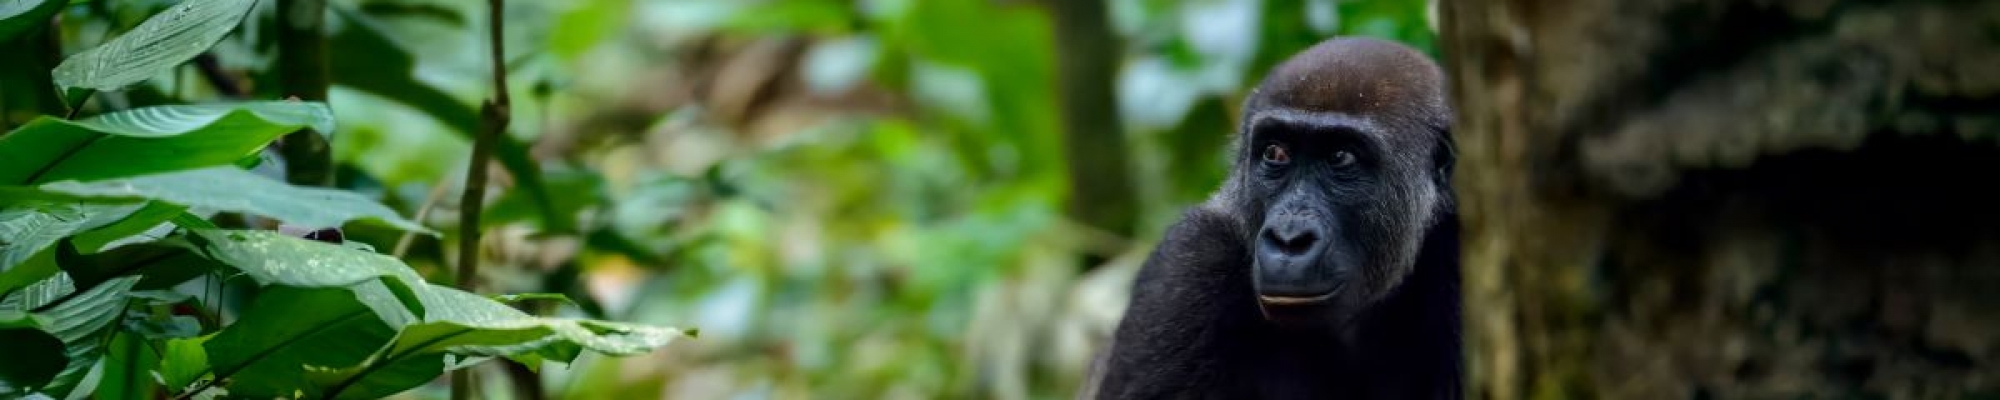 Gorilles des plaines du Congo Brazzaville